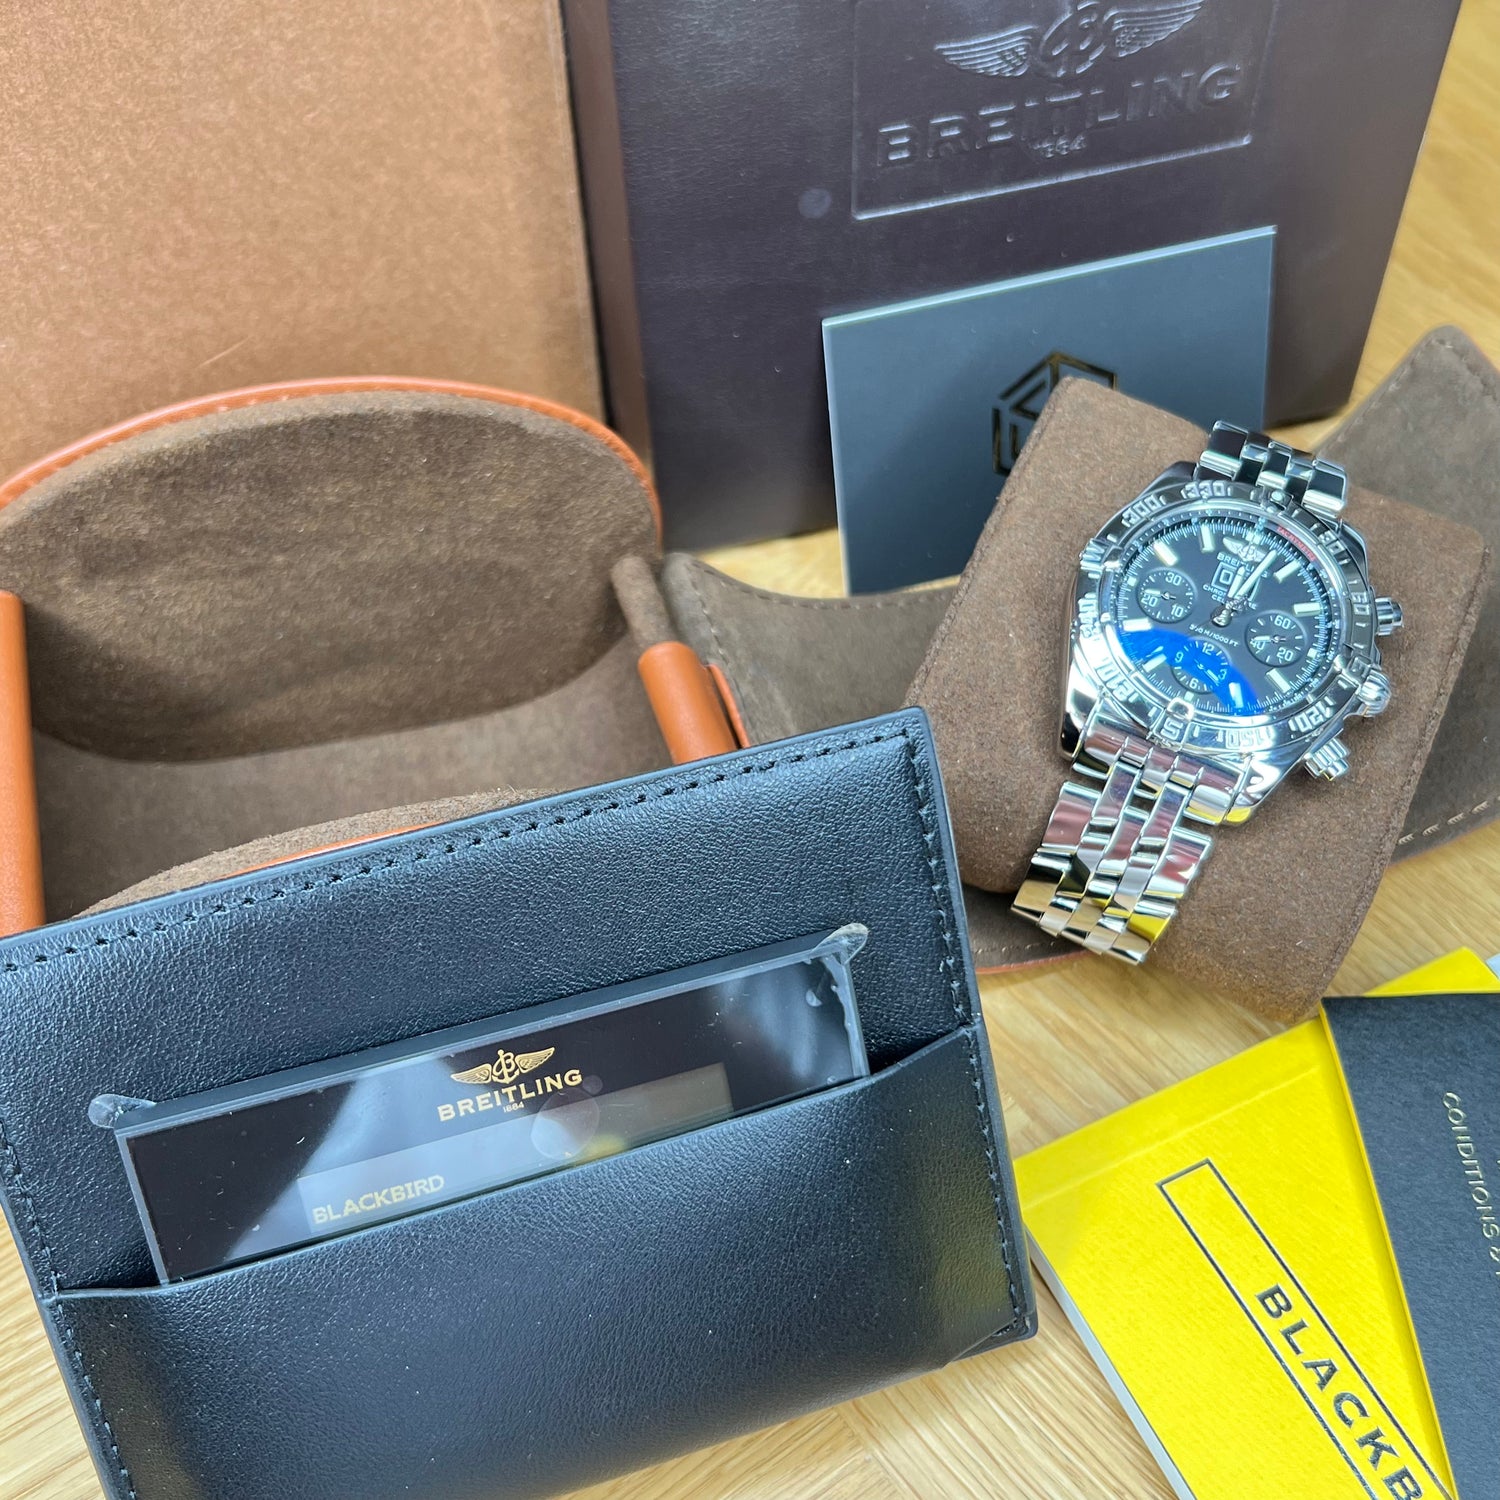 Breitling Blackbird Men's Watch A4435912/B811 2017 Full set Watch